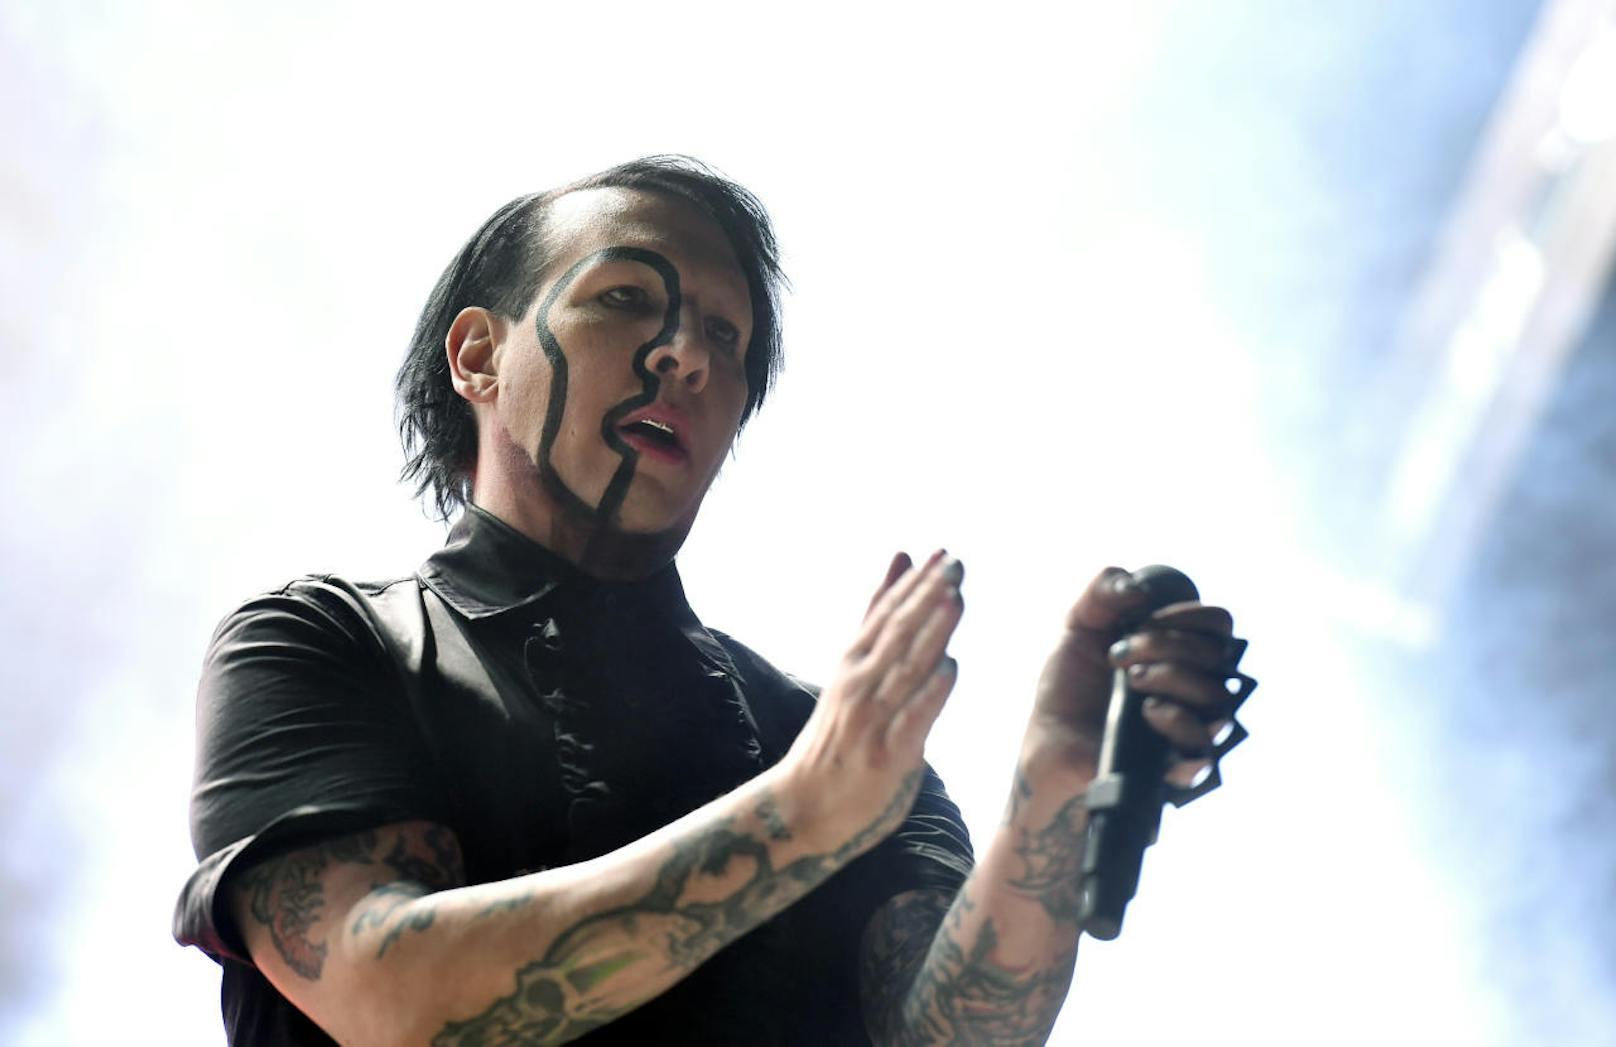 Sänger Marilyn Manson während eines Konzertes auf der "Blue Stage" im Rahmen des "Nova Rock 2018" Festivals am Donnerstag, 14. Juni 2018 im burgenländischen Nickelsdorf.